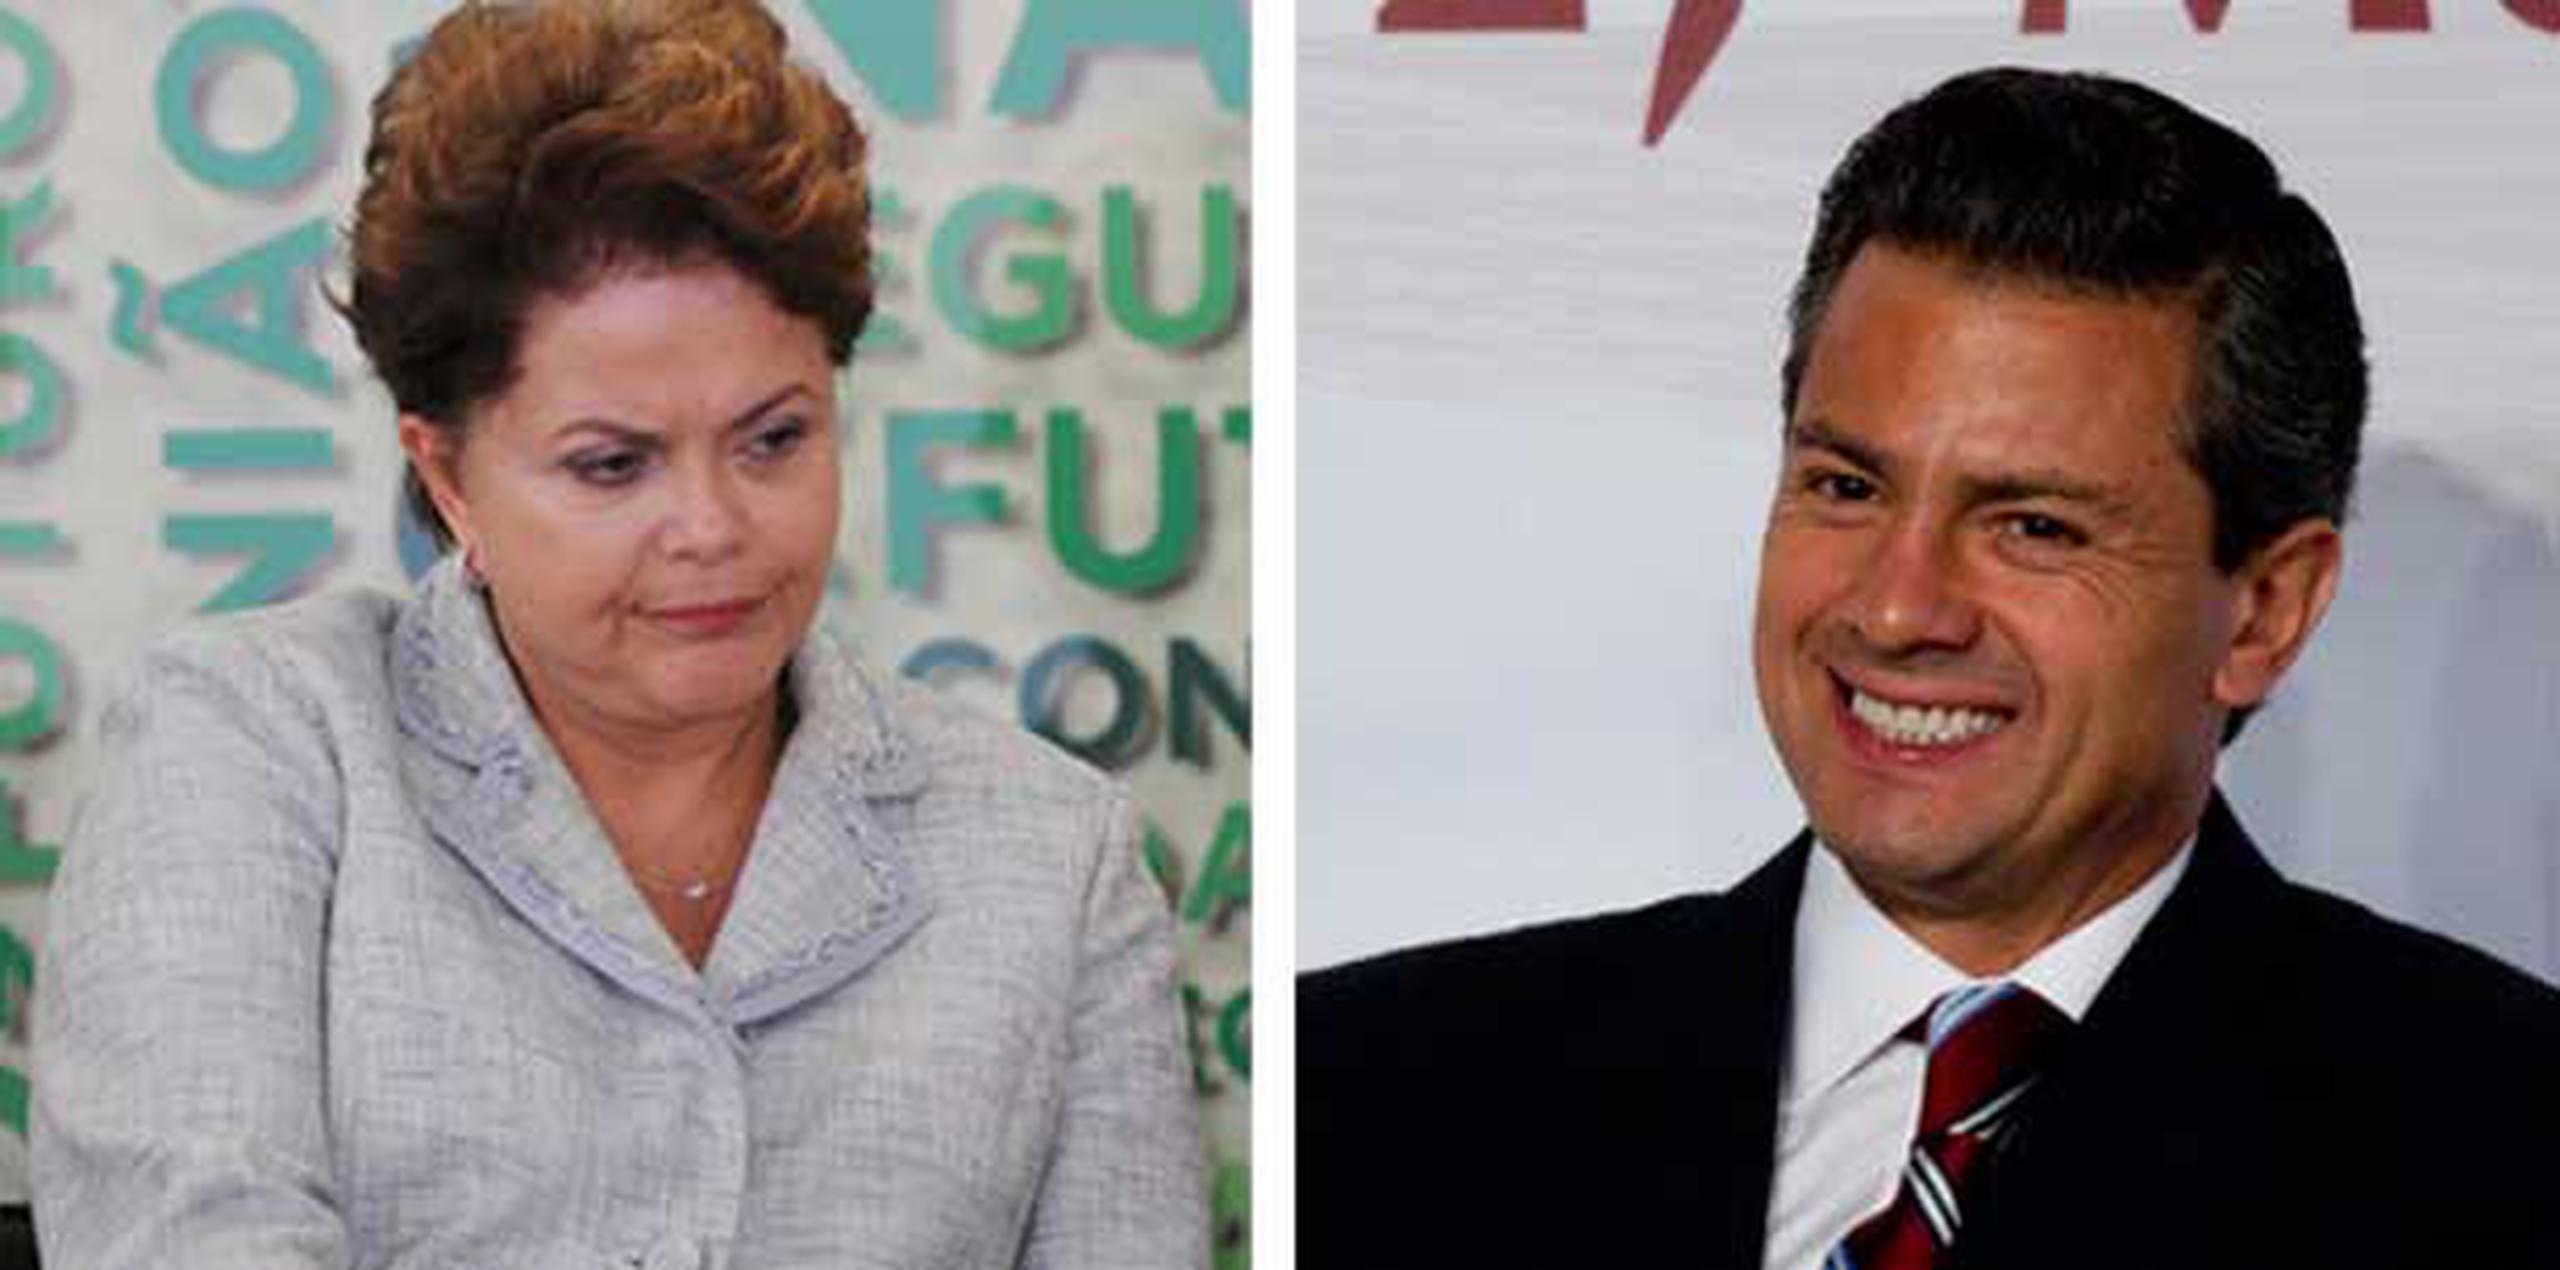 Los correos electrónicos de los presidentes Dilma Rousseff y Enrique Peña Nieto fueron interceptados por la Agencia de Seguridad Nacional de Estados Unidos.   (Archivo)